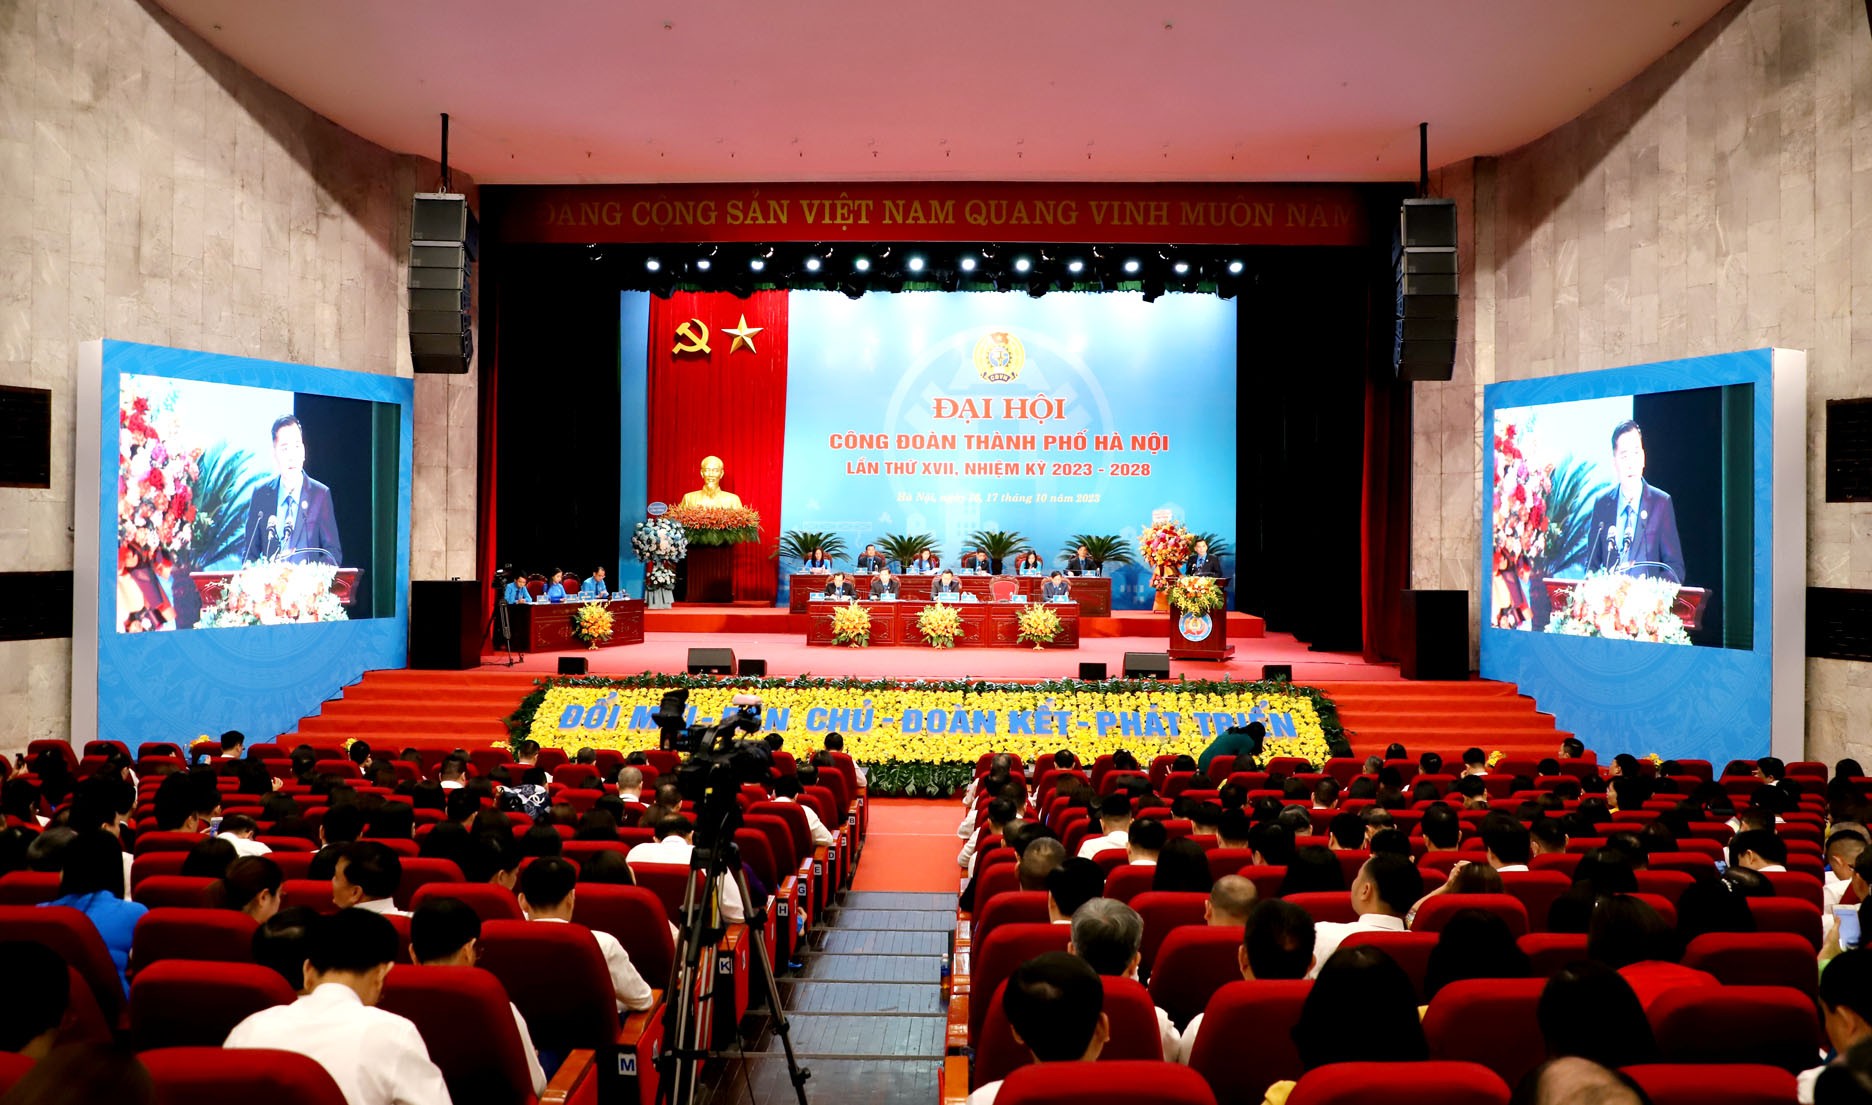 TRỰC TUYẾN: Ngày làm việc thứ nhất Đại hội Công đoàn thành phố Hà Nội lần thứ XVII